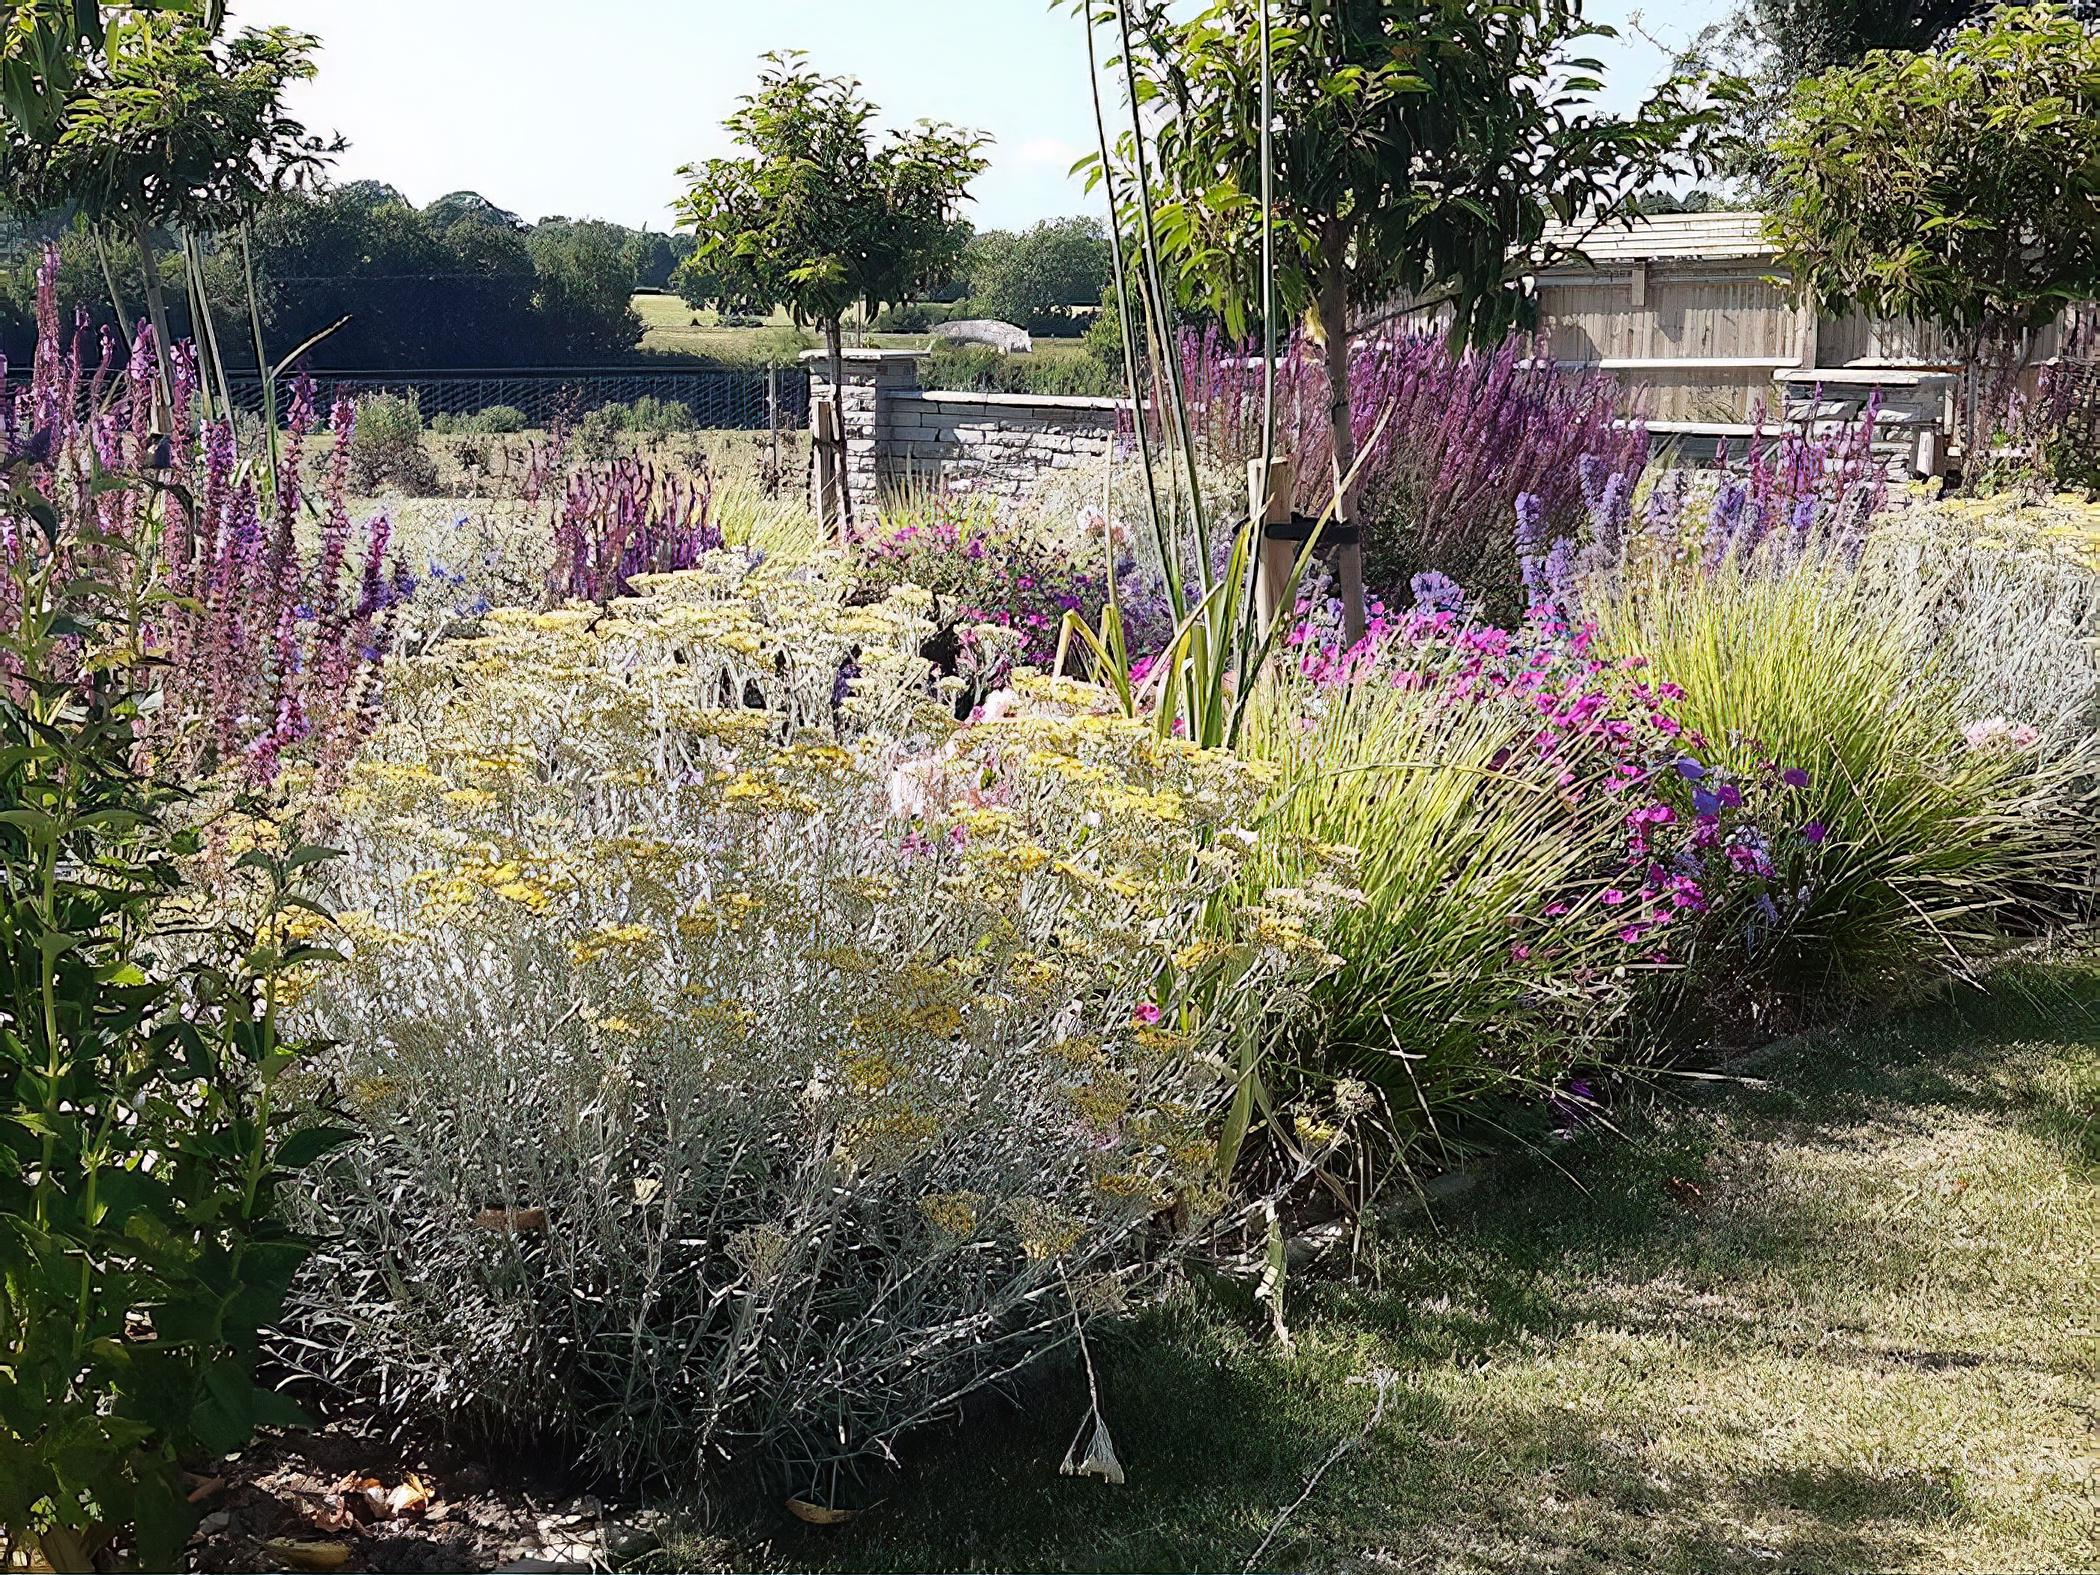 Sussex English Garden by Sussex based garden designer Anna Helps